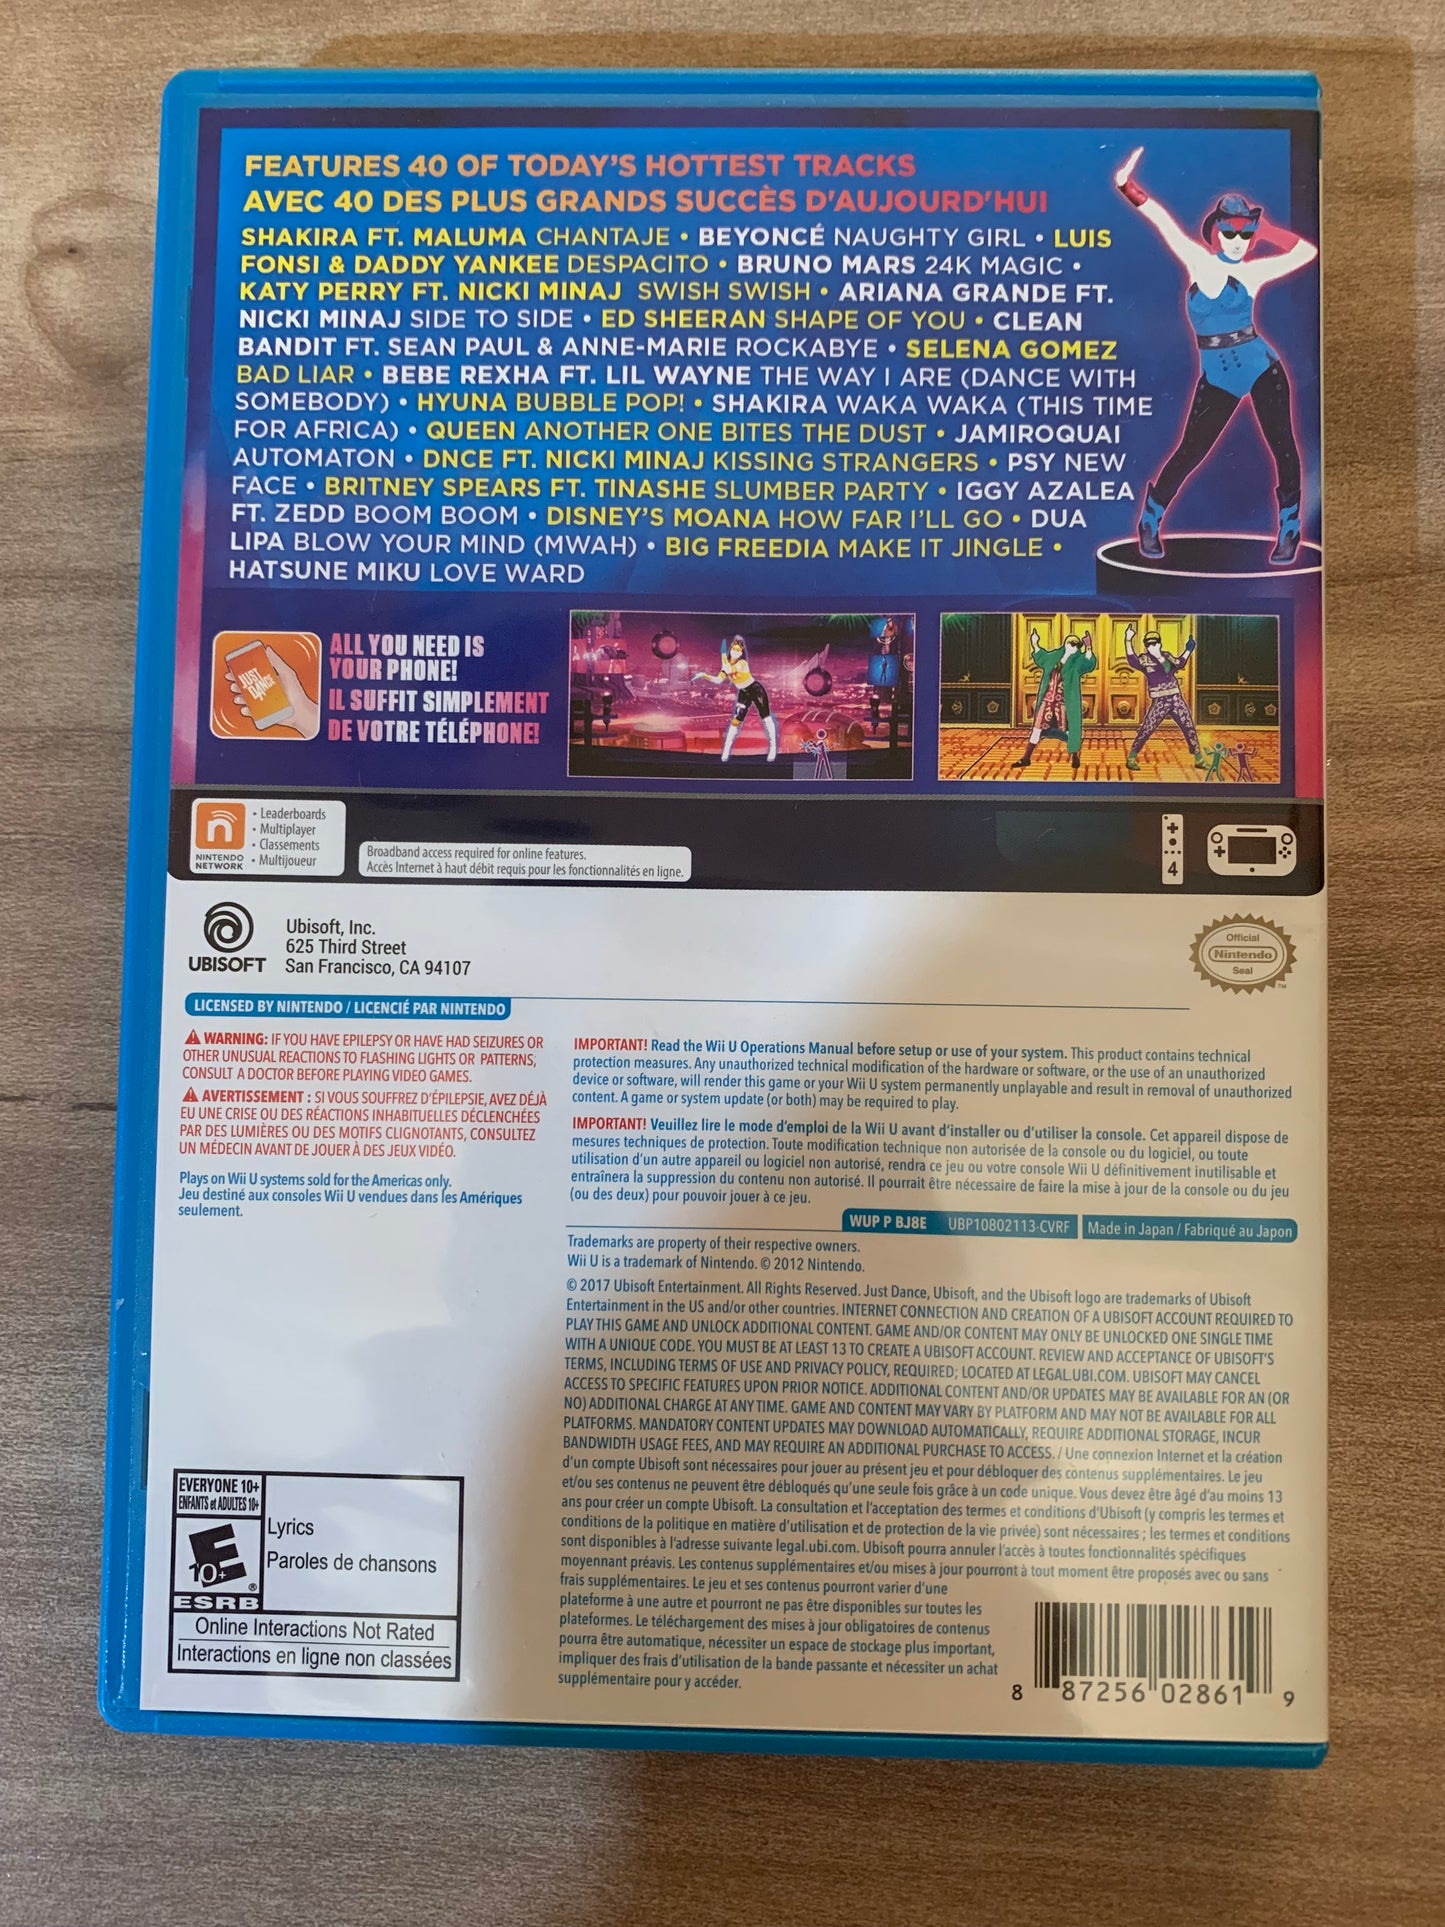 NiNTENDO Wii U | JUST DANCE 2018